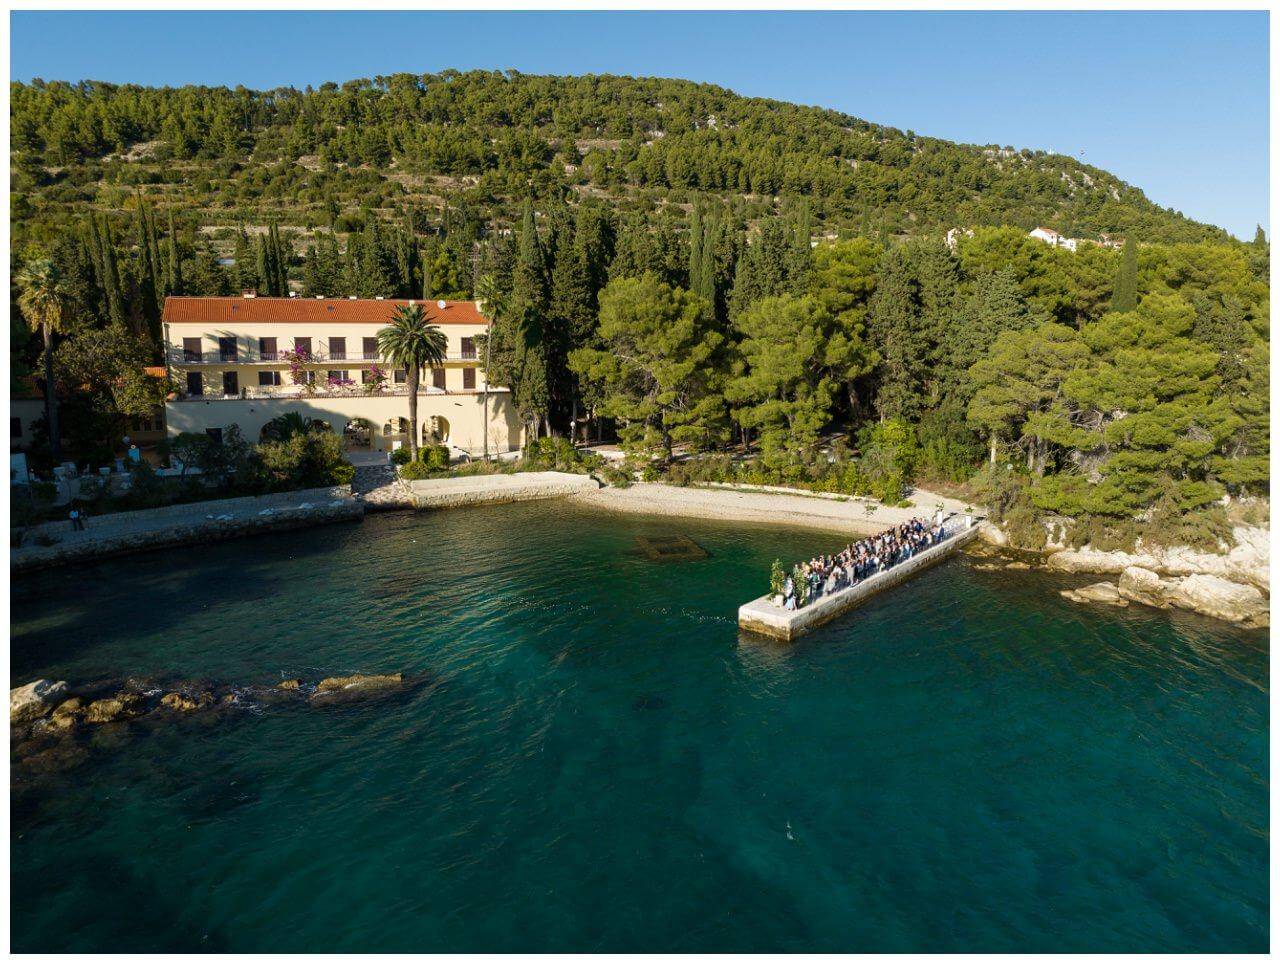 Private Villa Kroatien am Meer Real Wedding Kroatien, wedding in croatia,hochzeitsplanerin kroatien, hochzeit in kroatien